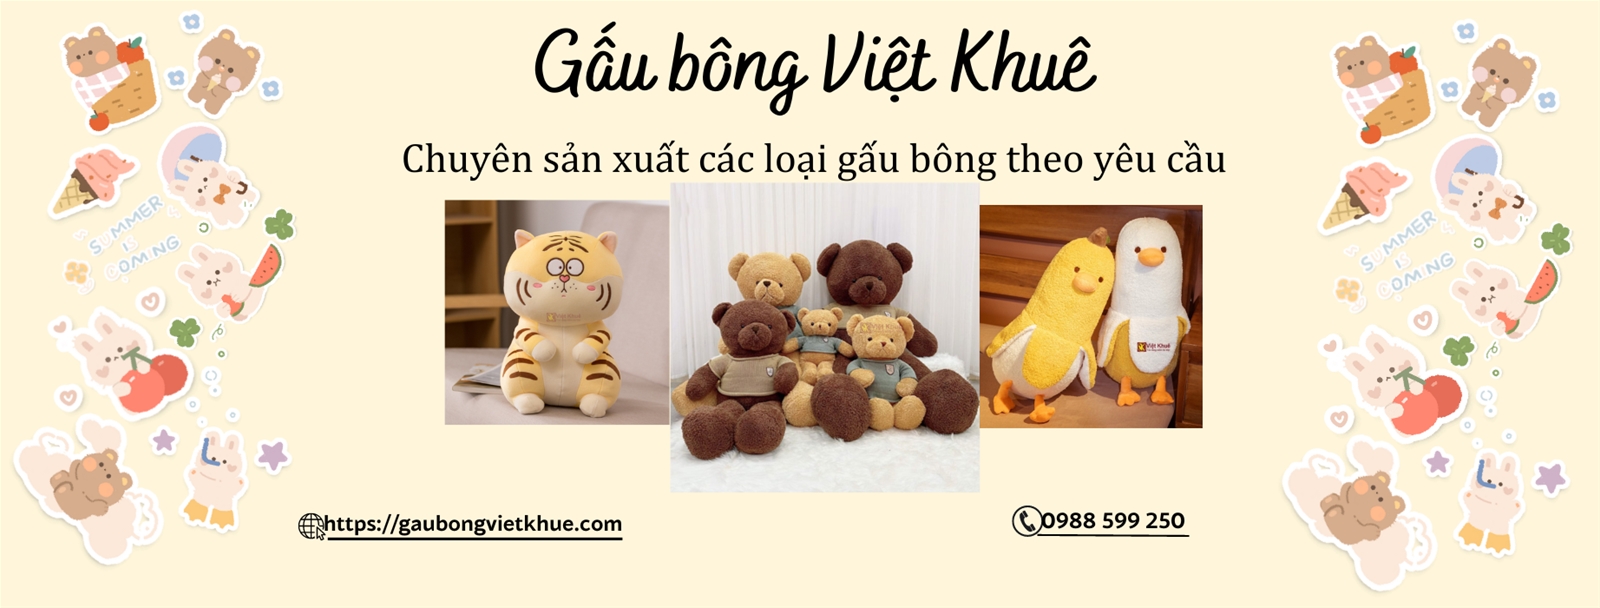 Gấu bông Việt Khuê